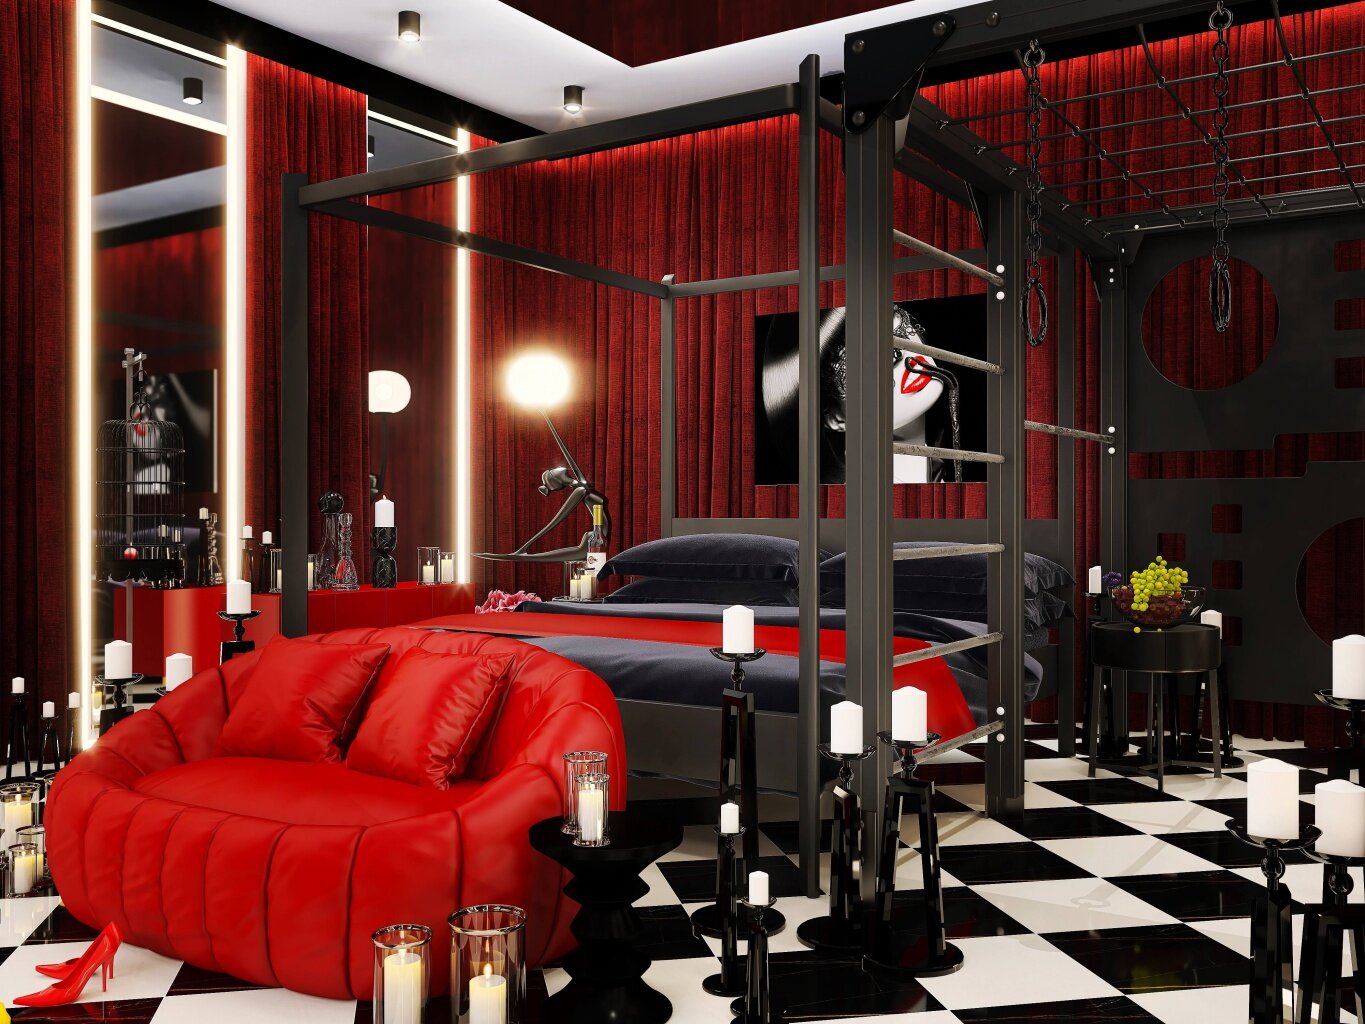 Apartament Kinky - to Projekt Unikatowych  Wnętrz Pokoju Seks Room do zabaw intymnych oraz erotycznych - Sex room to wnętrze kontrastowe i ostre w wyrazie z elementami Kinky BDSM - 